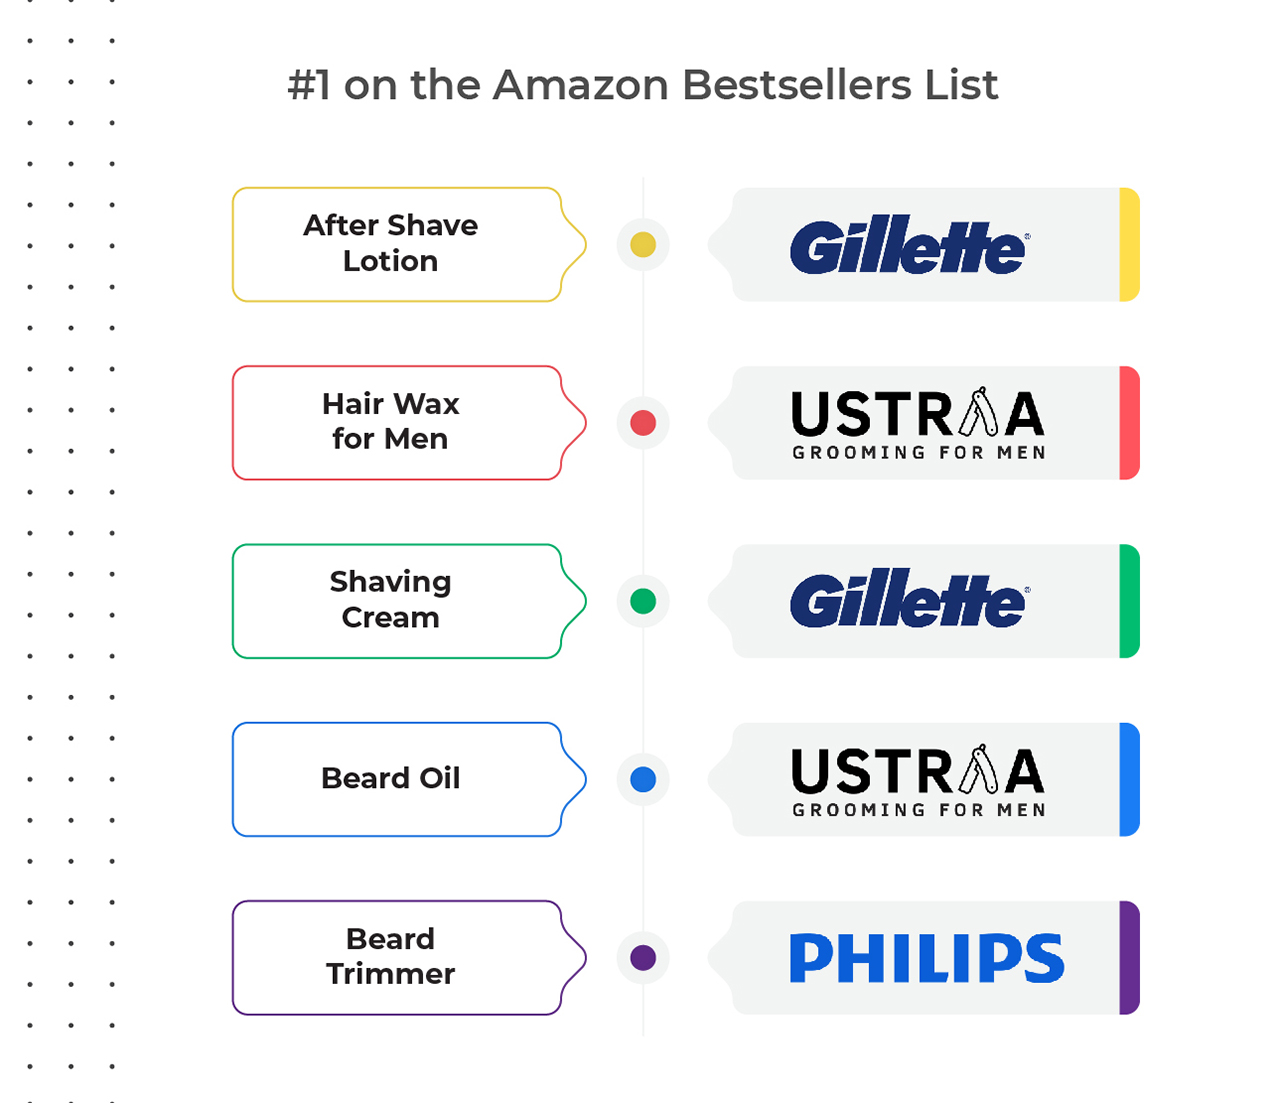 Amazon Bestseller List